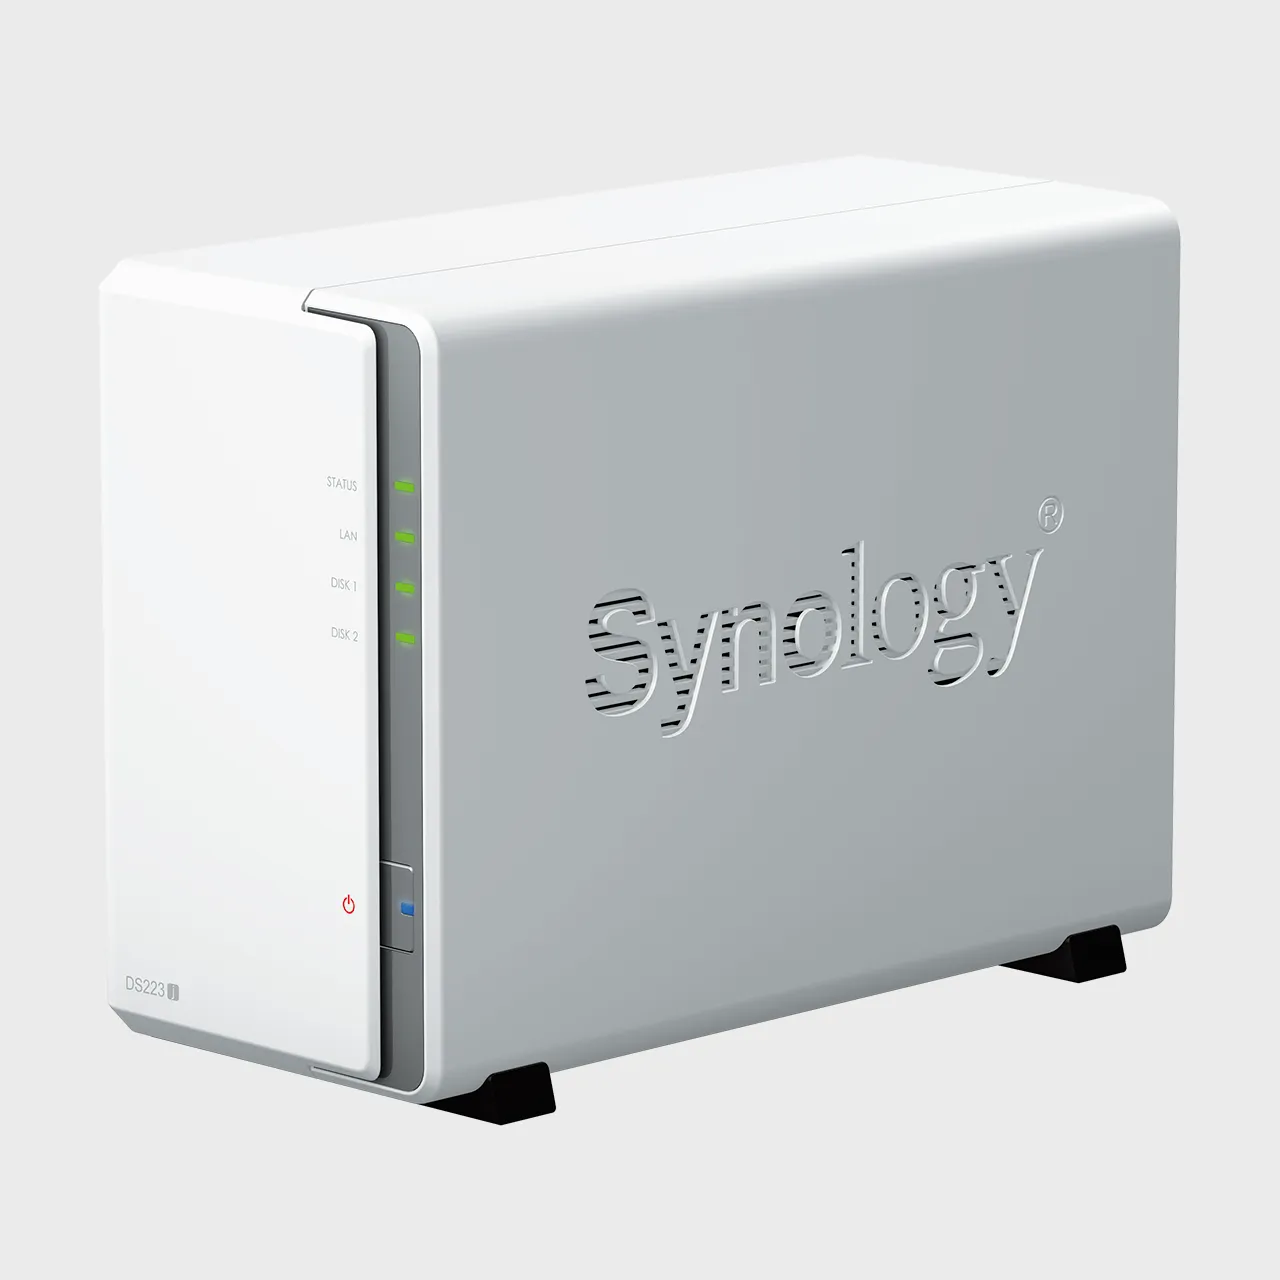 Synology ra mắt DiskStation DS223j, giải pháp NAS 2 khay đơn giản và hiệu quả